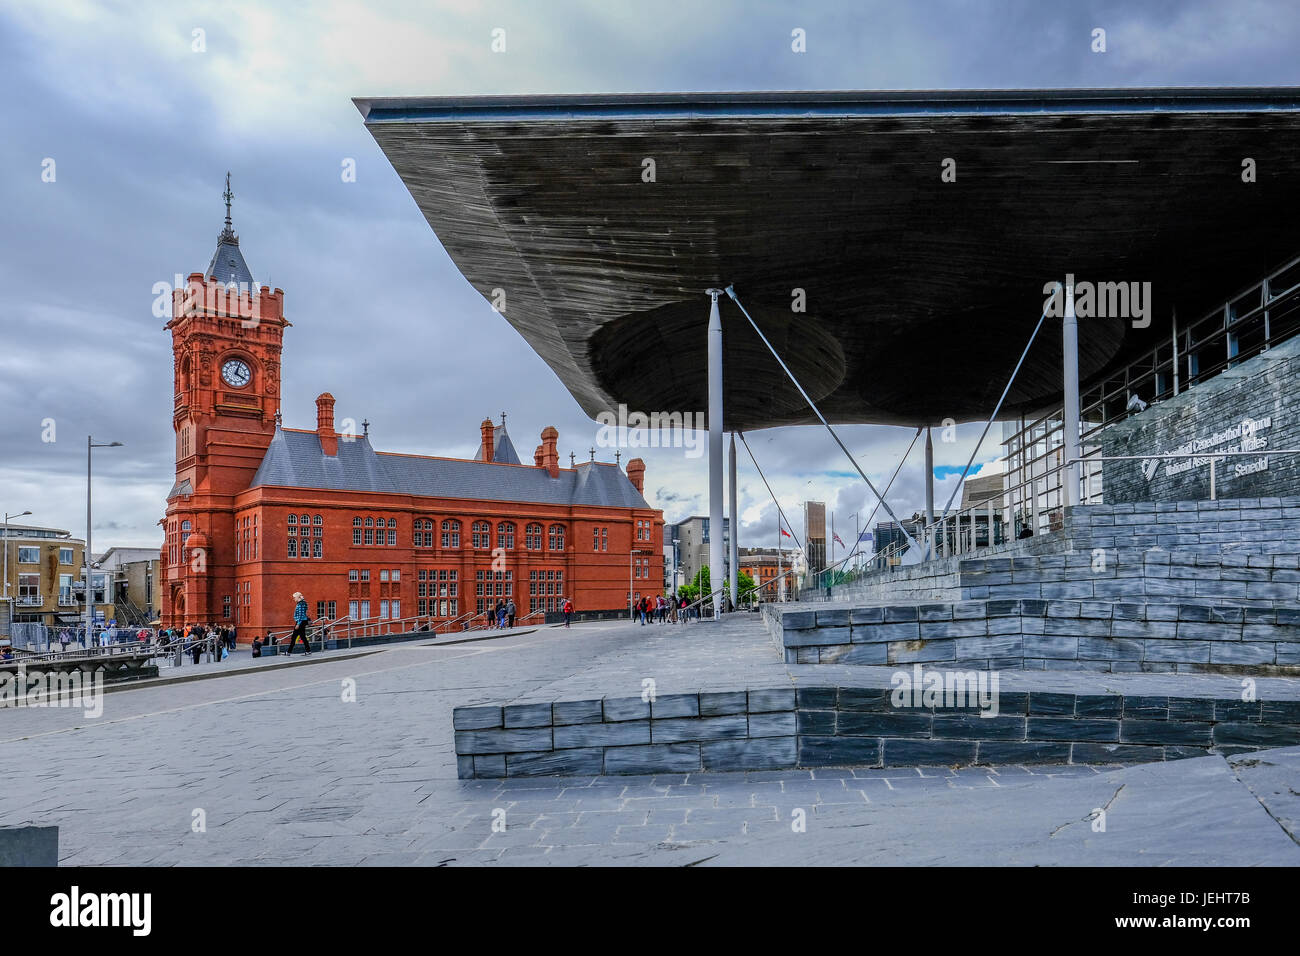 Bucht von Cardiff, Cardiff, Wales - 20. Mai 2017: Sinedd, Gebäude der Nationalversammlung und Pierhead Builidng. Blick in Richtung Pierhead Gebäude. Stockfoto